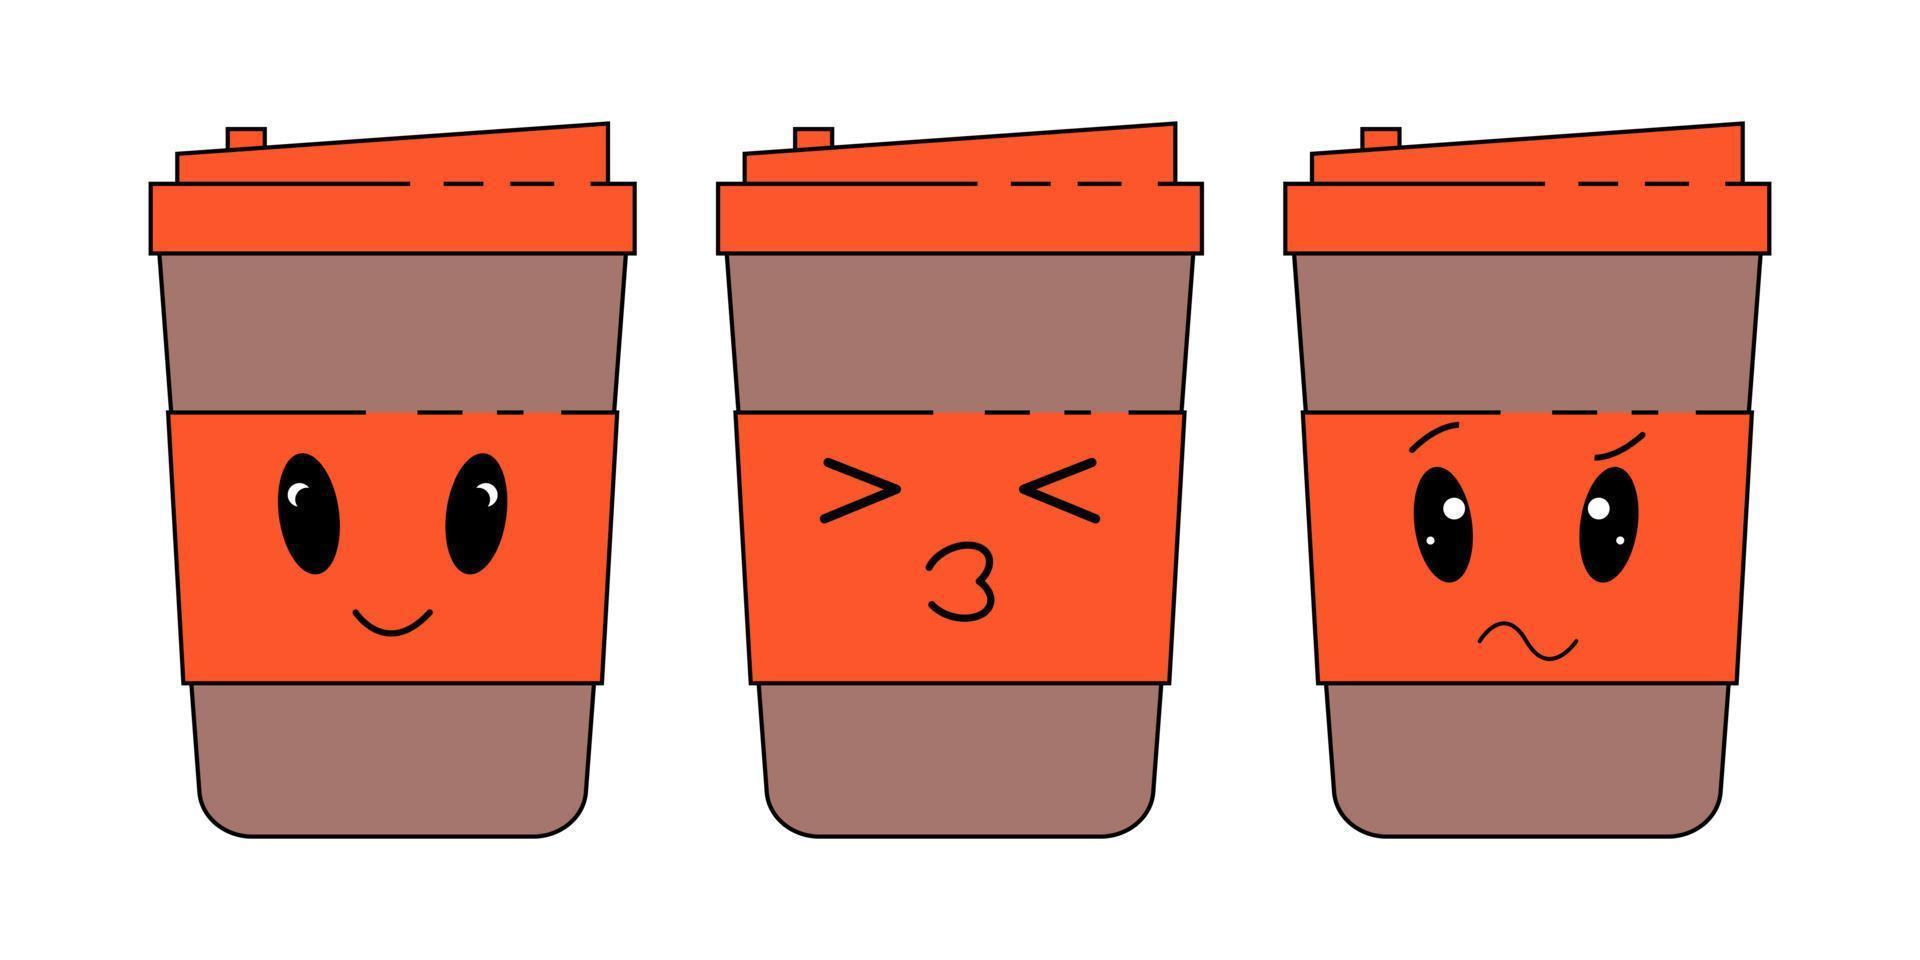 kaffe papper kopp uttryckssymboler uppsättning med annorlunda ansikten och uttryck. vektor